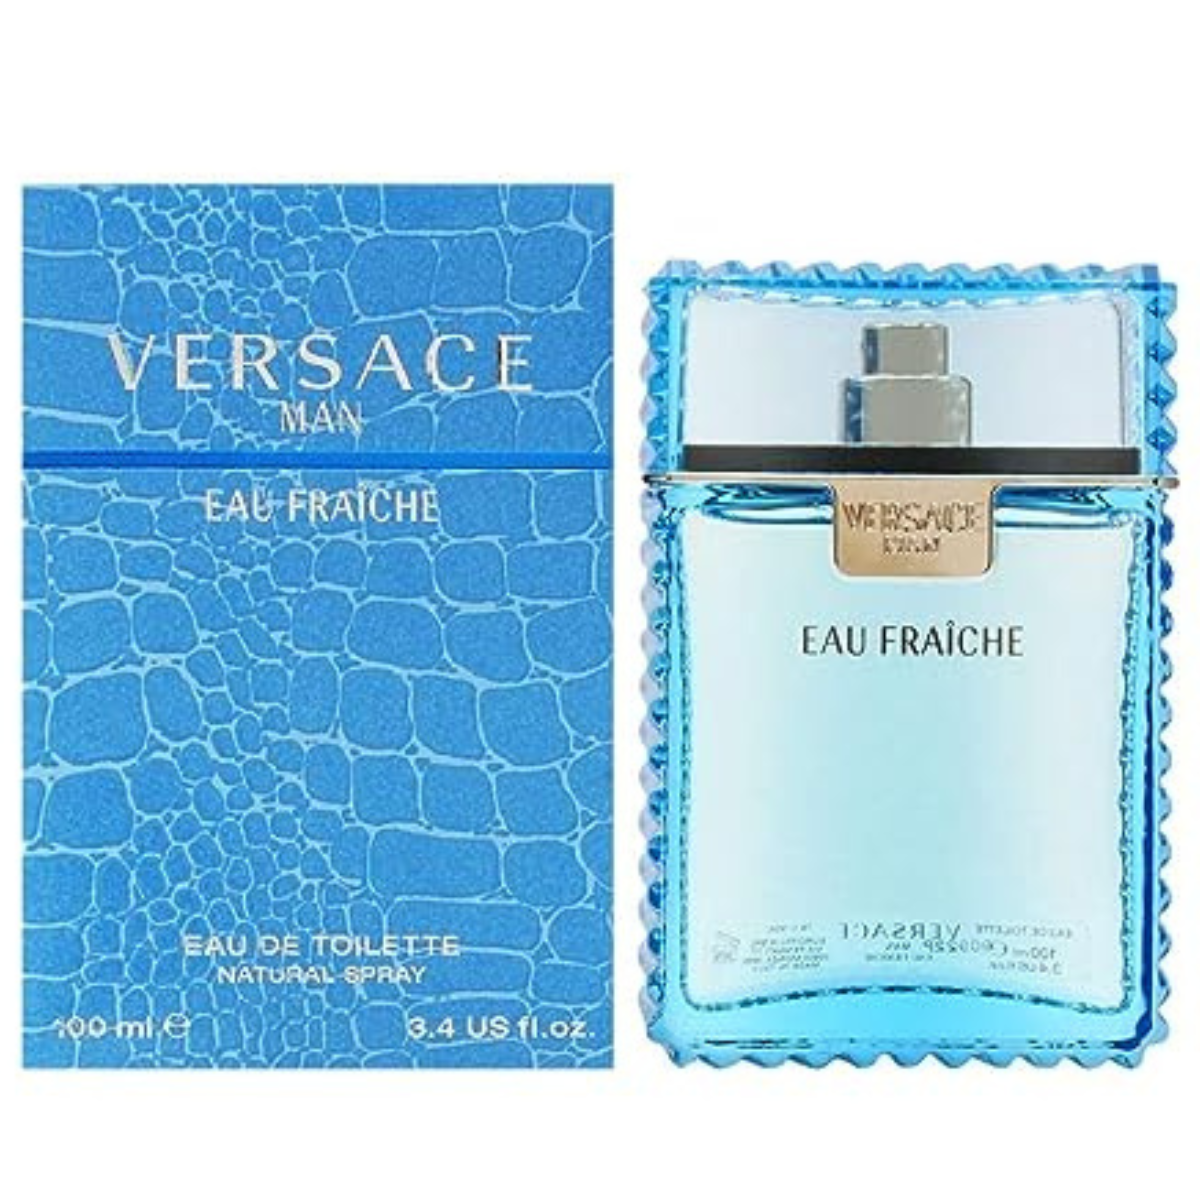 Versace Man Eau Fraiche 100 ml for Men